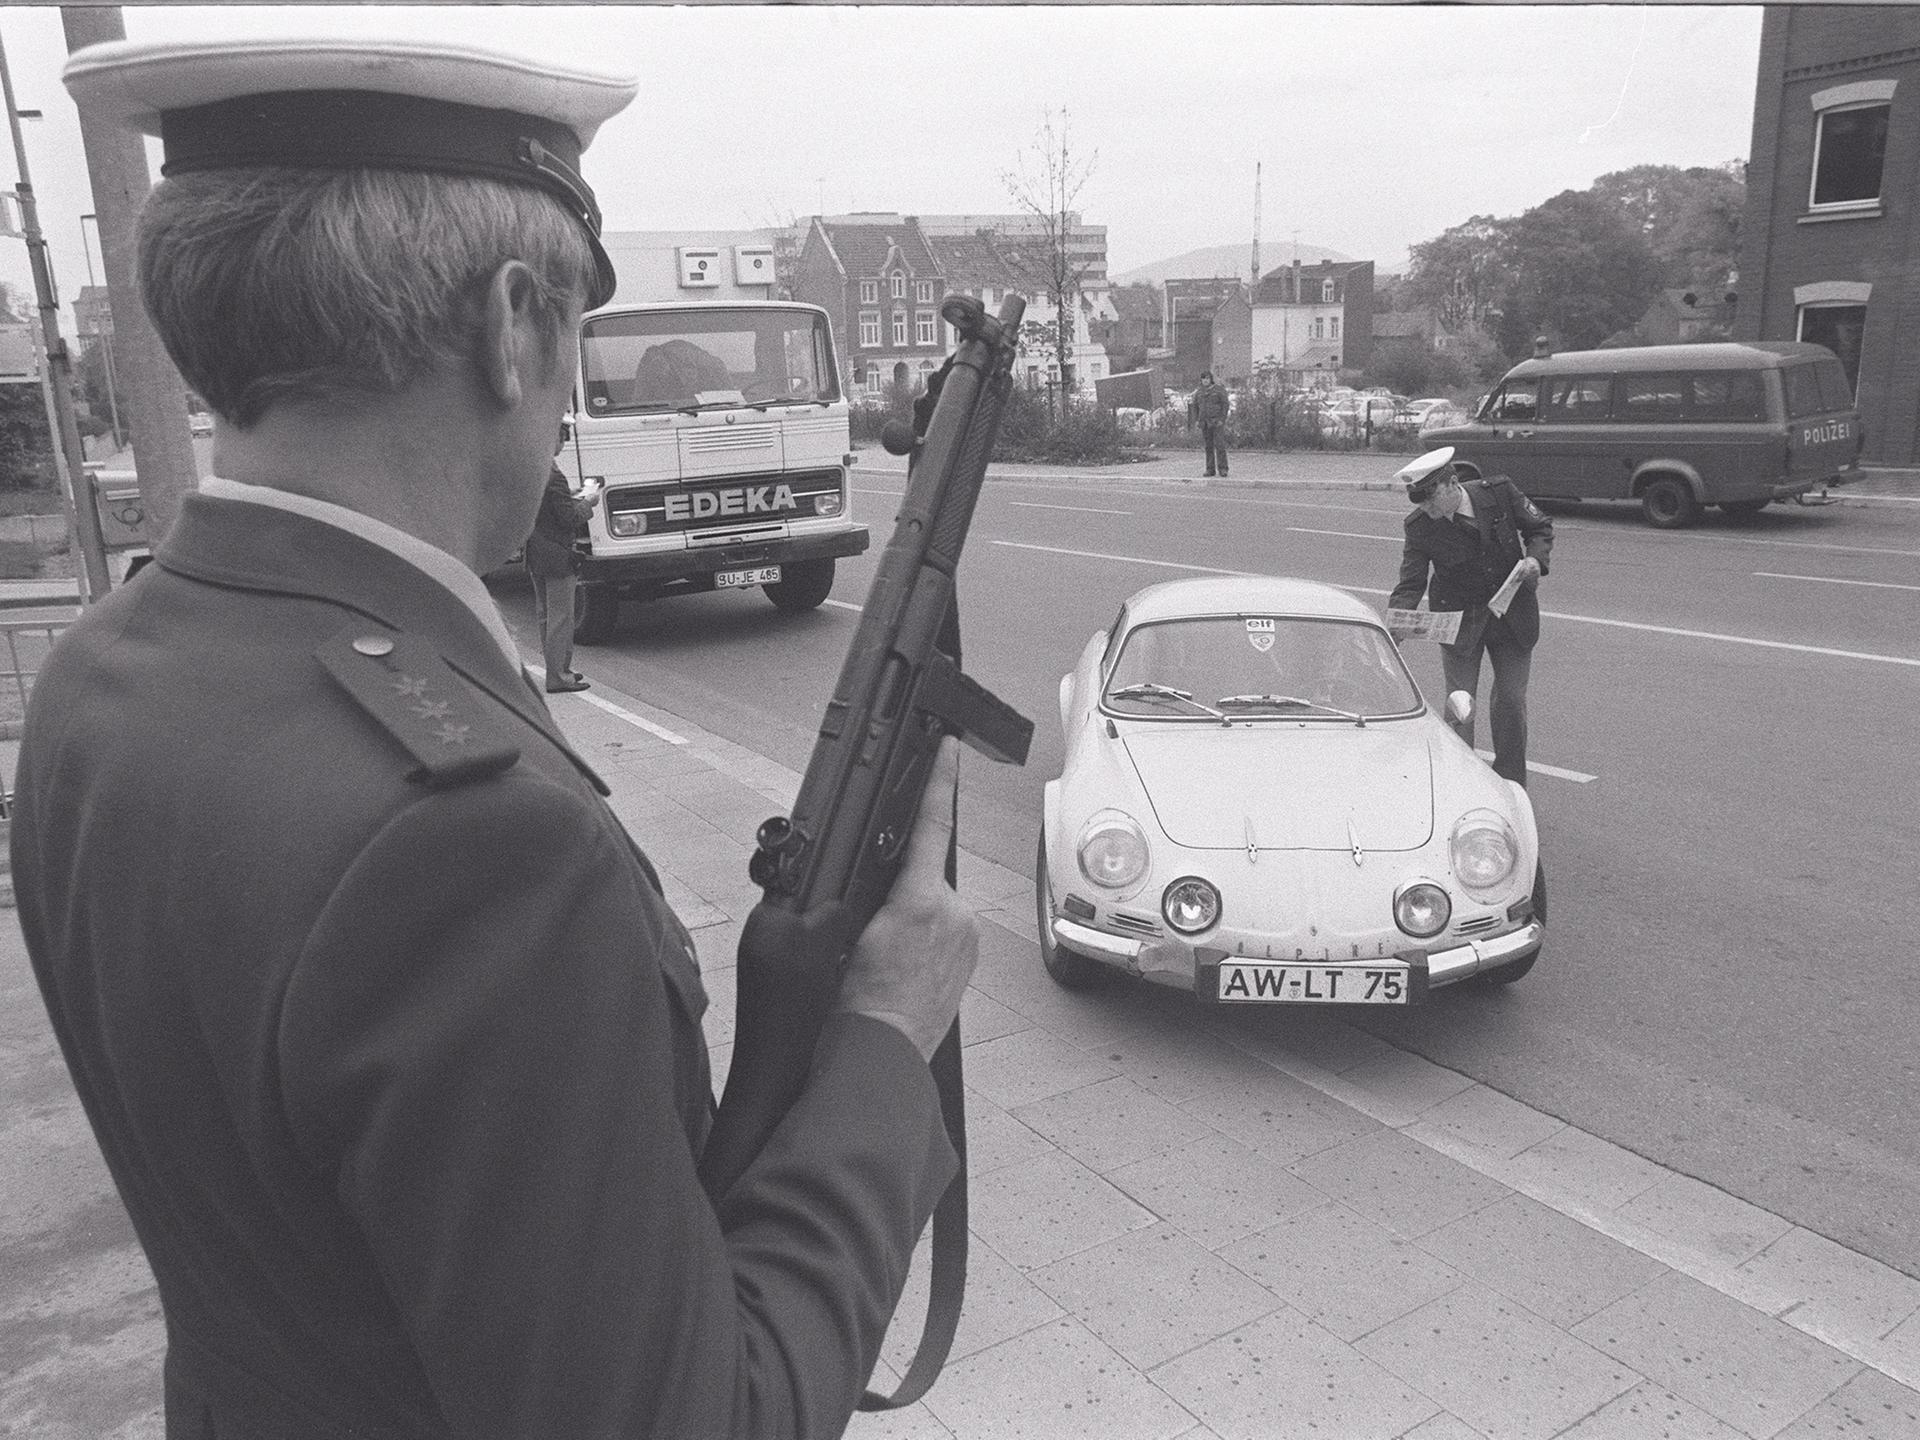 Eine Polizeikontrolle in den 70er-Jahren. Ein Polizist posiert mit einem Maschinengewehr. Ein anderer Polizist verteilt Flugblätter an die Insassen eines angehaltenen Autos.